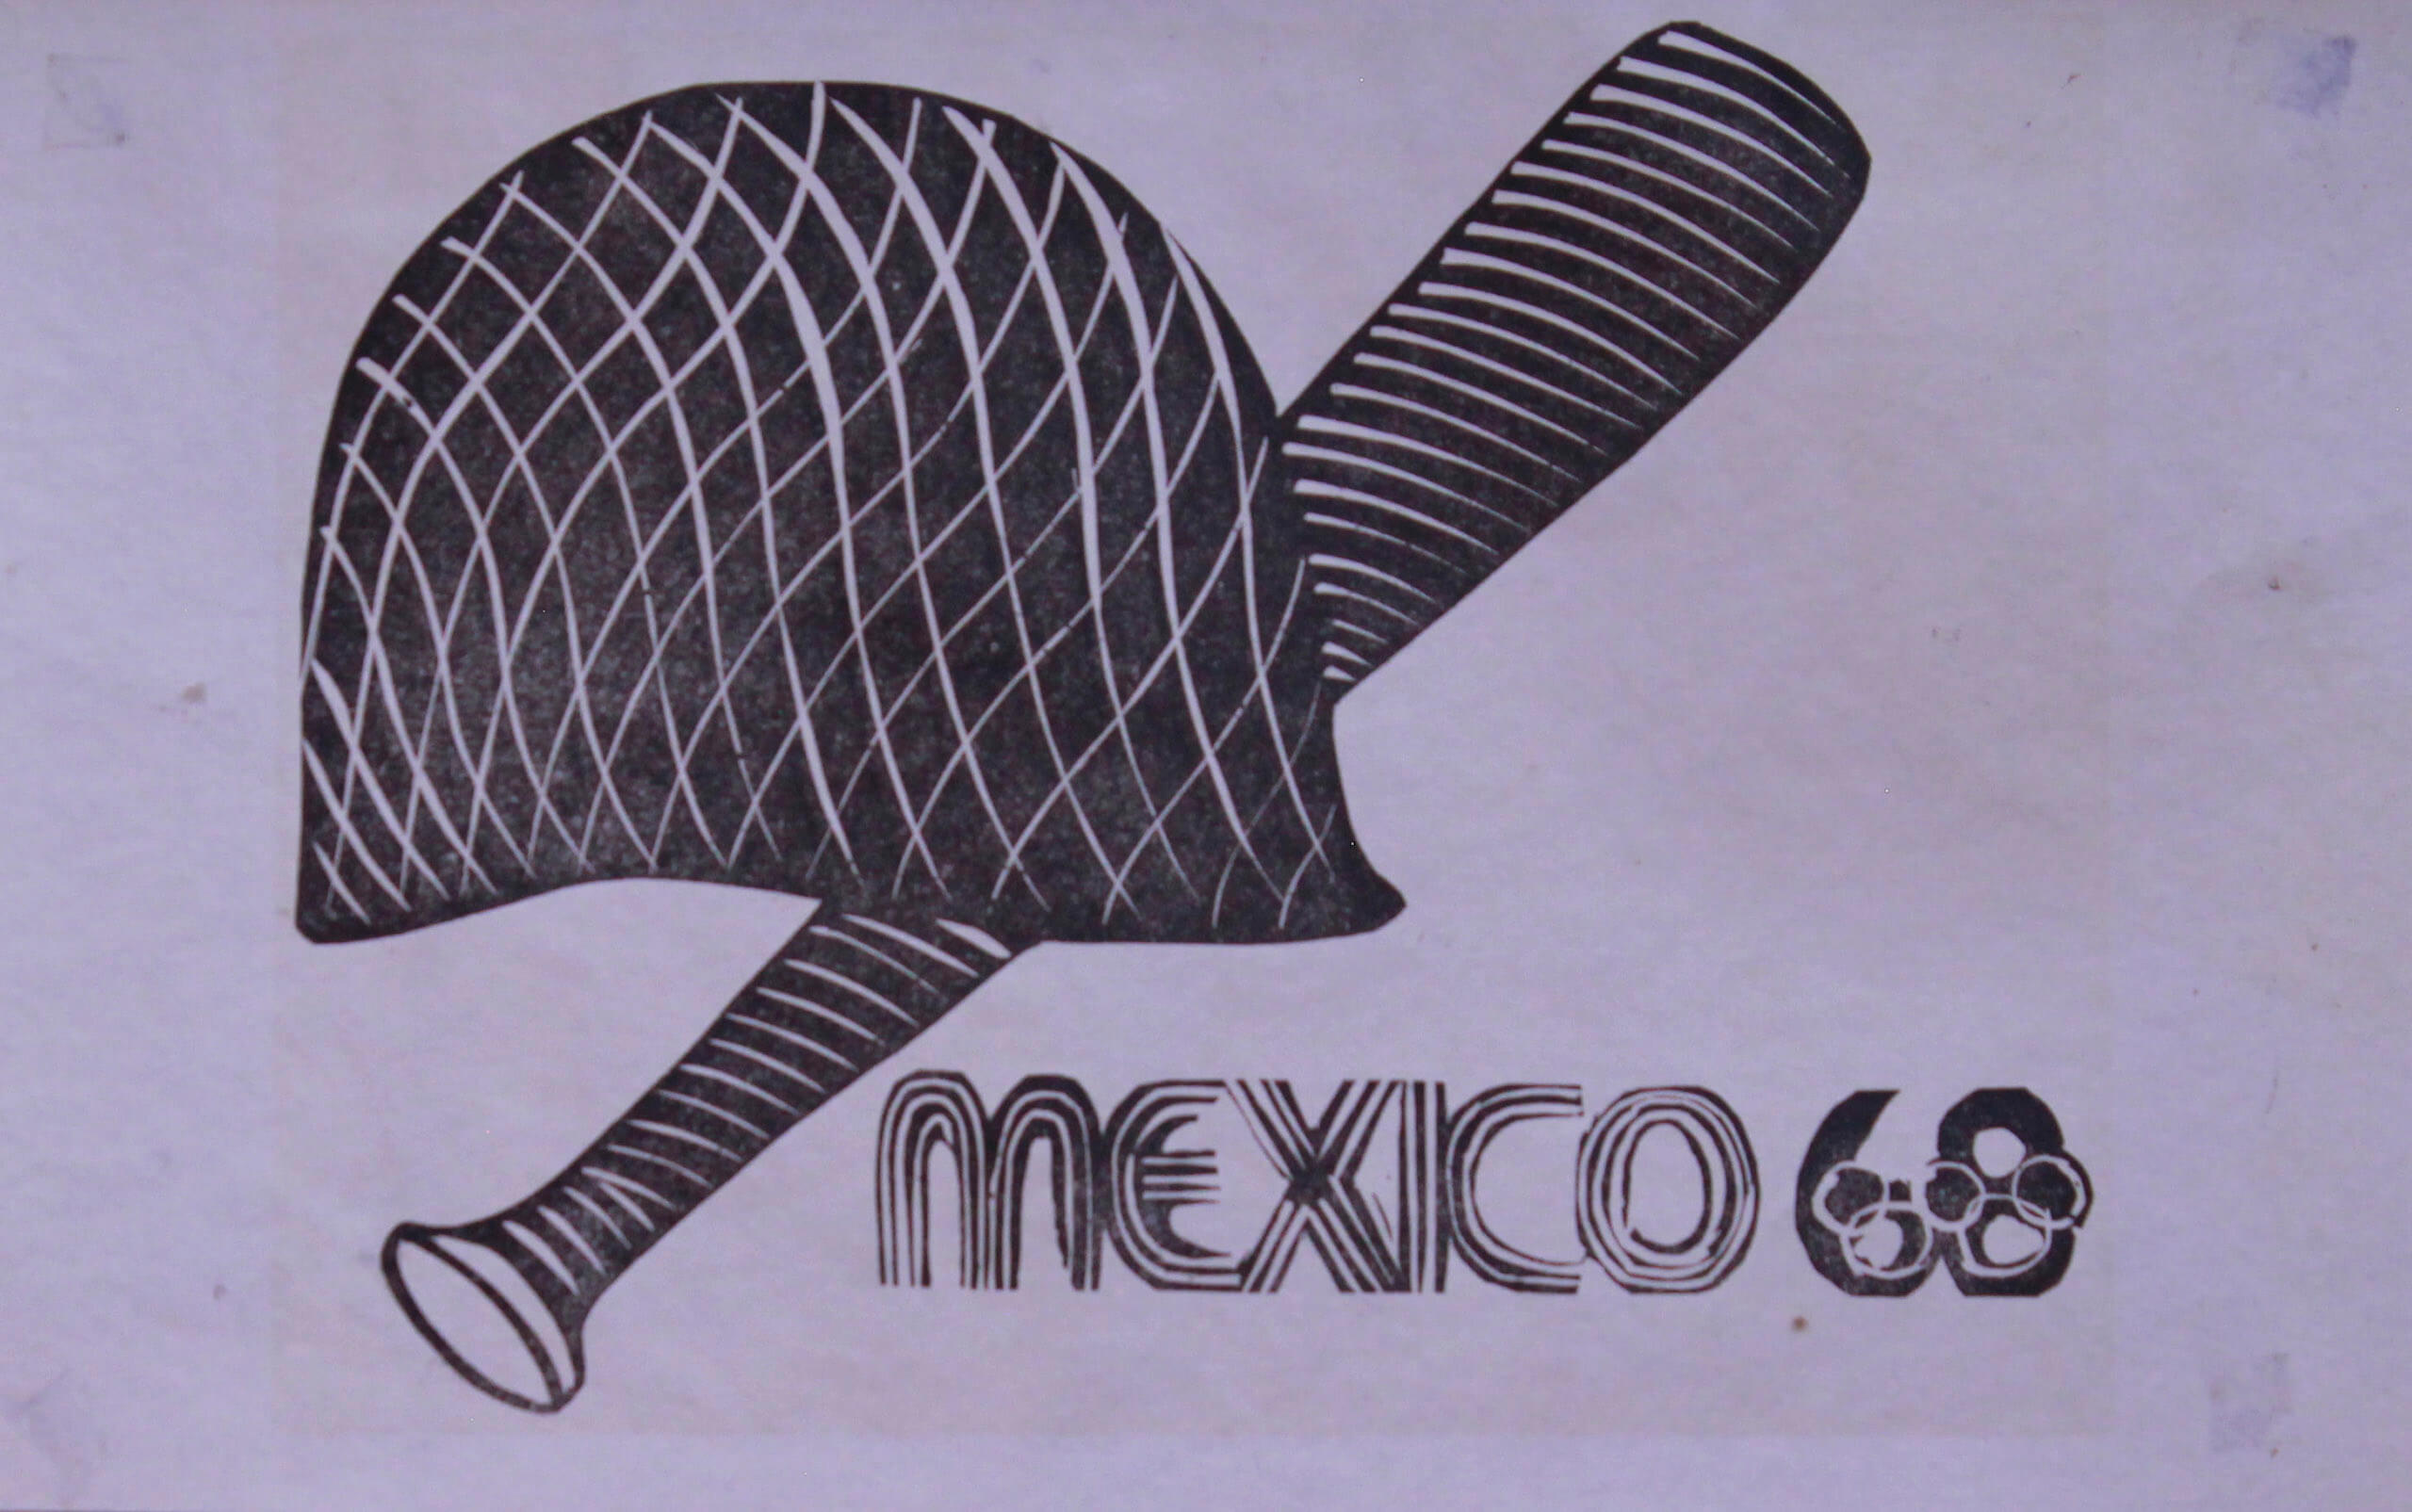 México 68 (casco y macana) | La demanda inasumible. Imaginación social y autogestión gráfica en México, 1968-2018 | Museo Amparo, Puebla